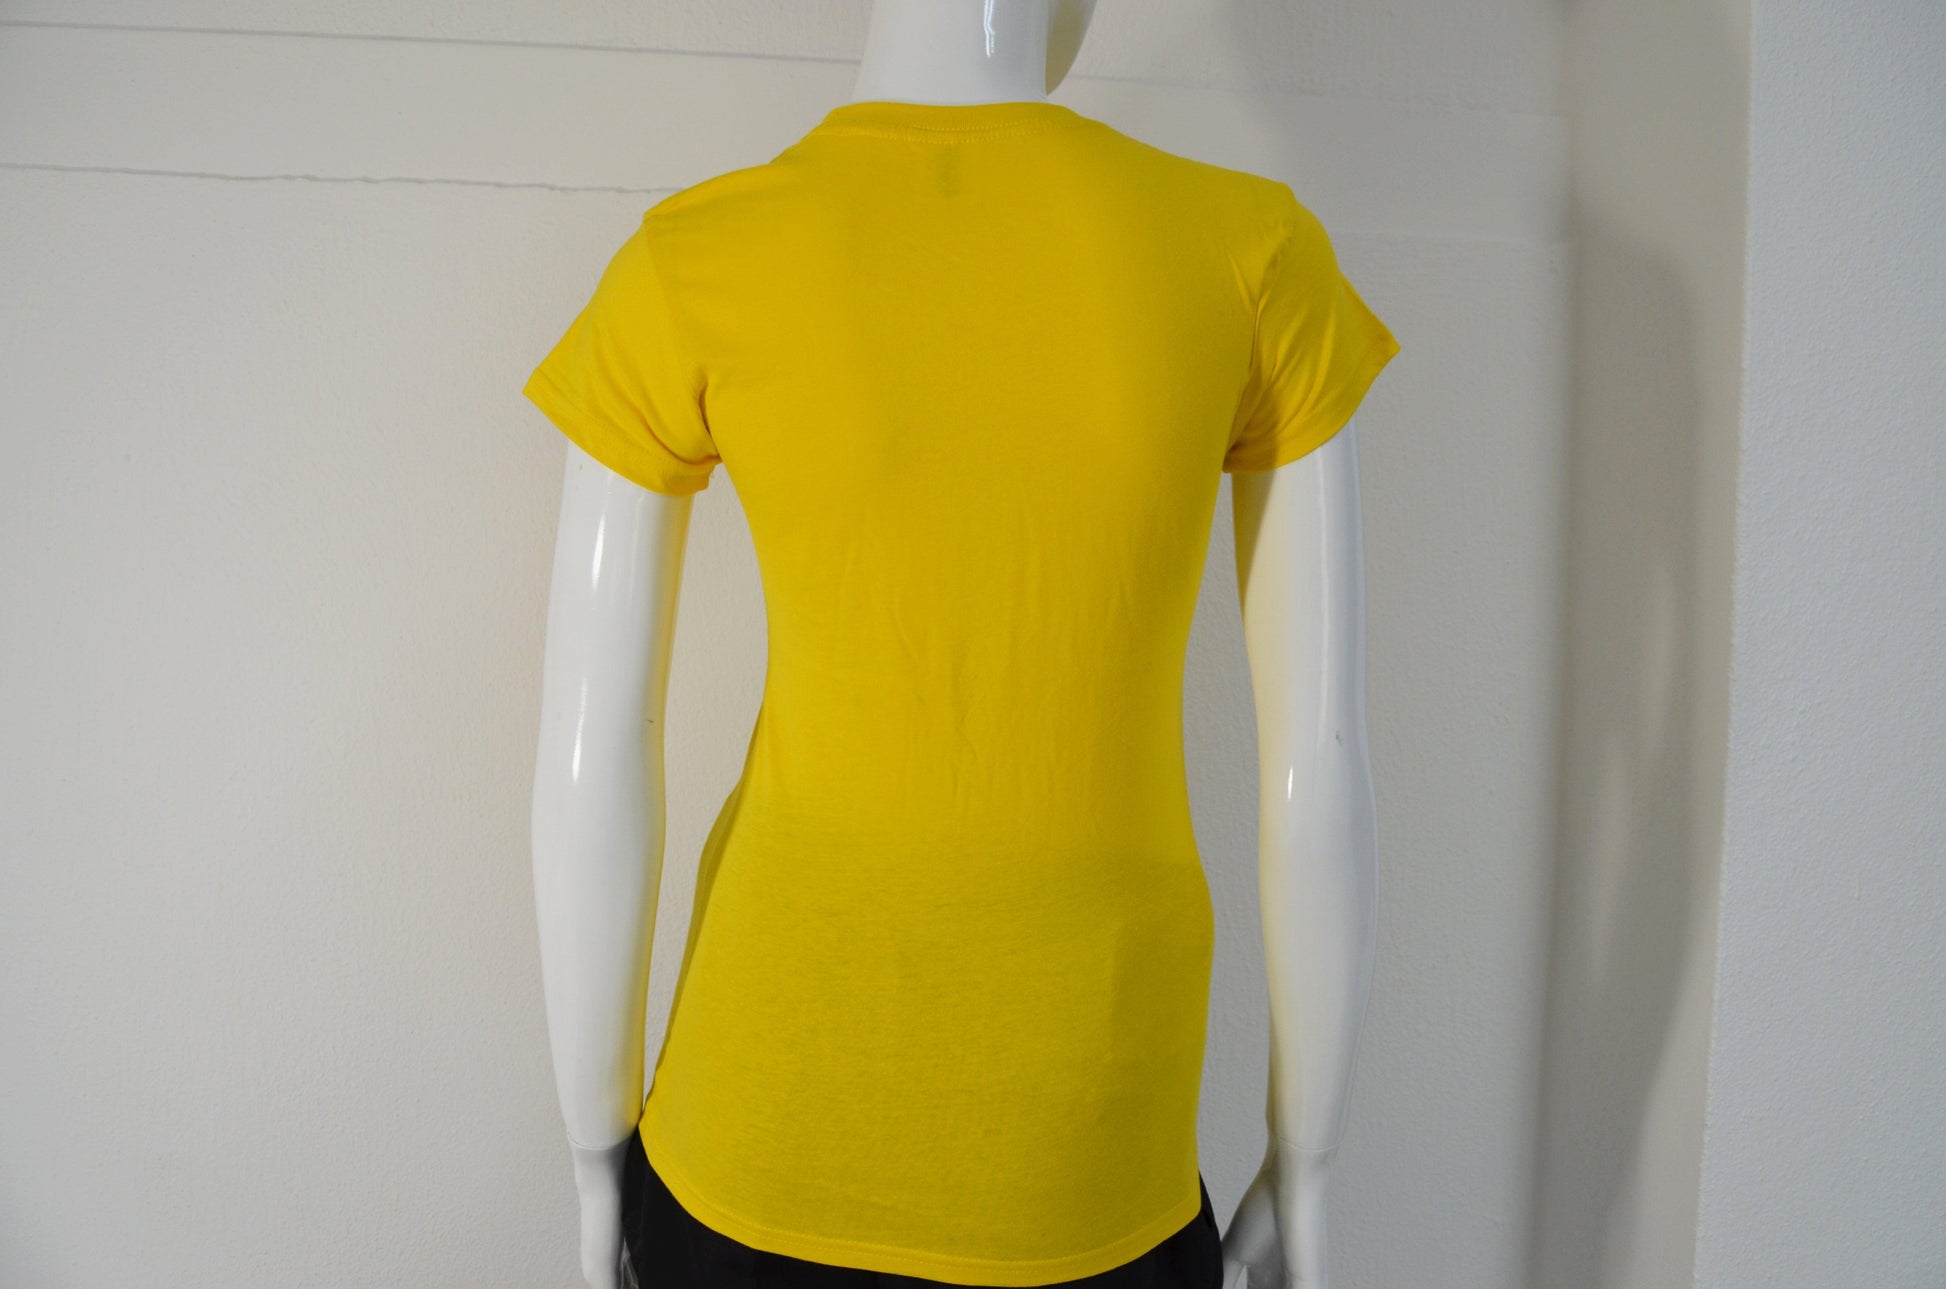 T-shirt women amarelo - BOD HOME